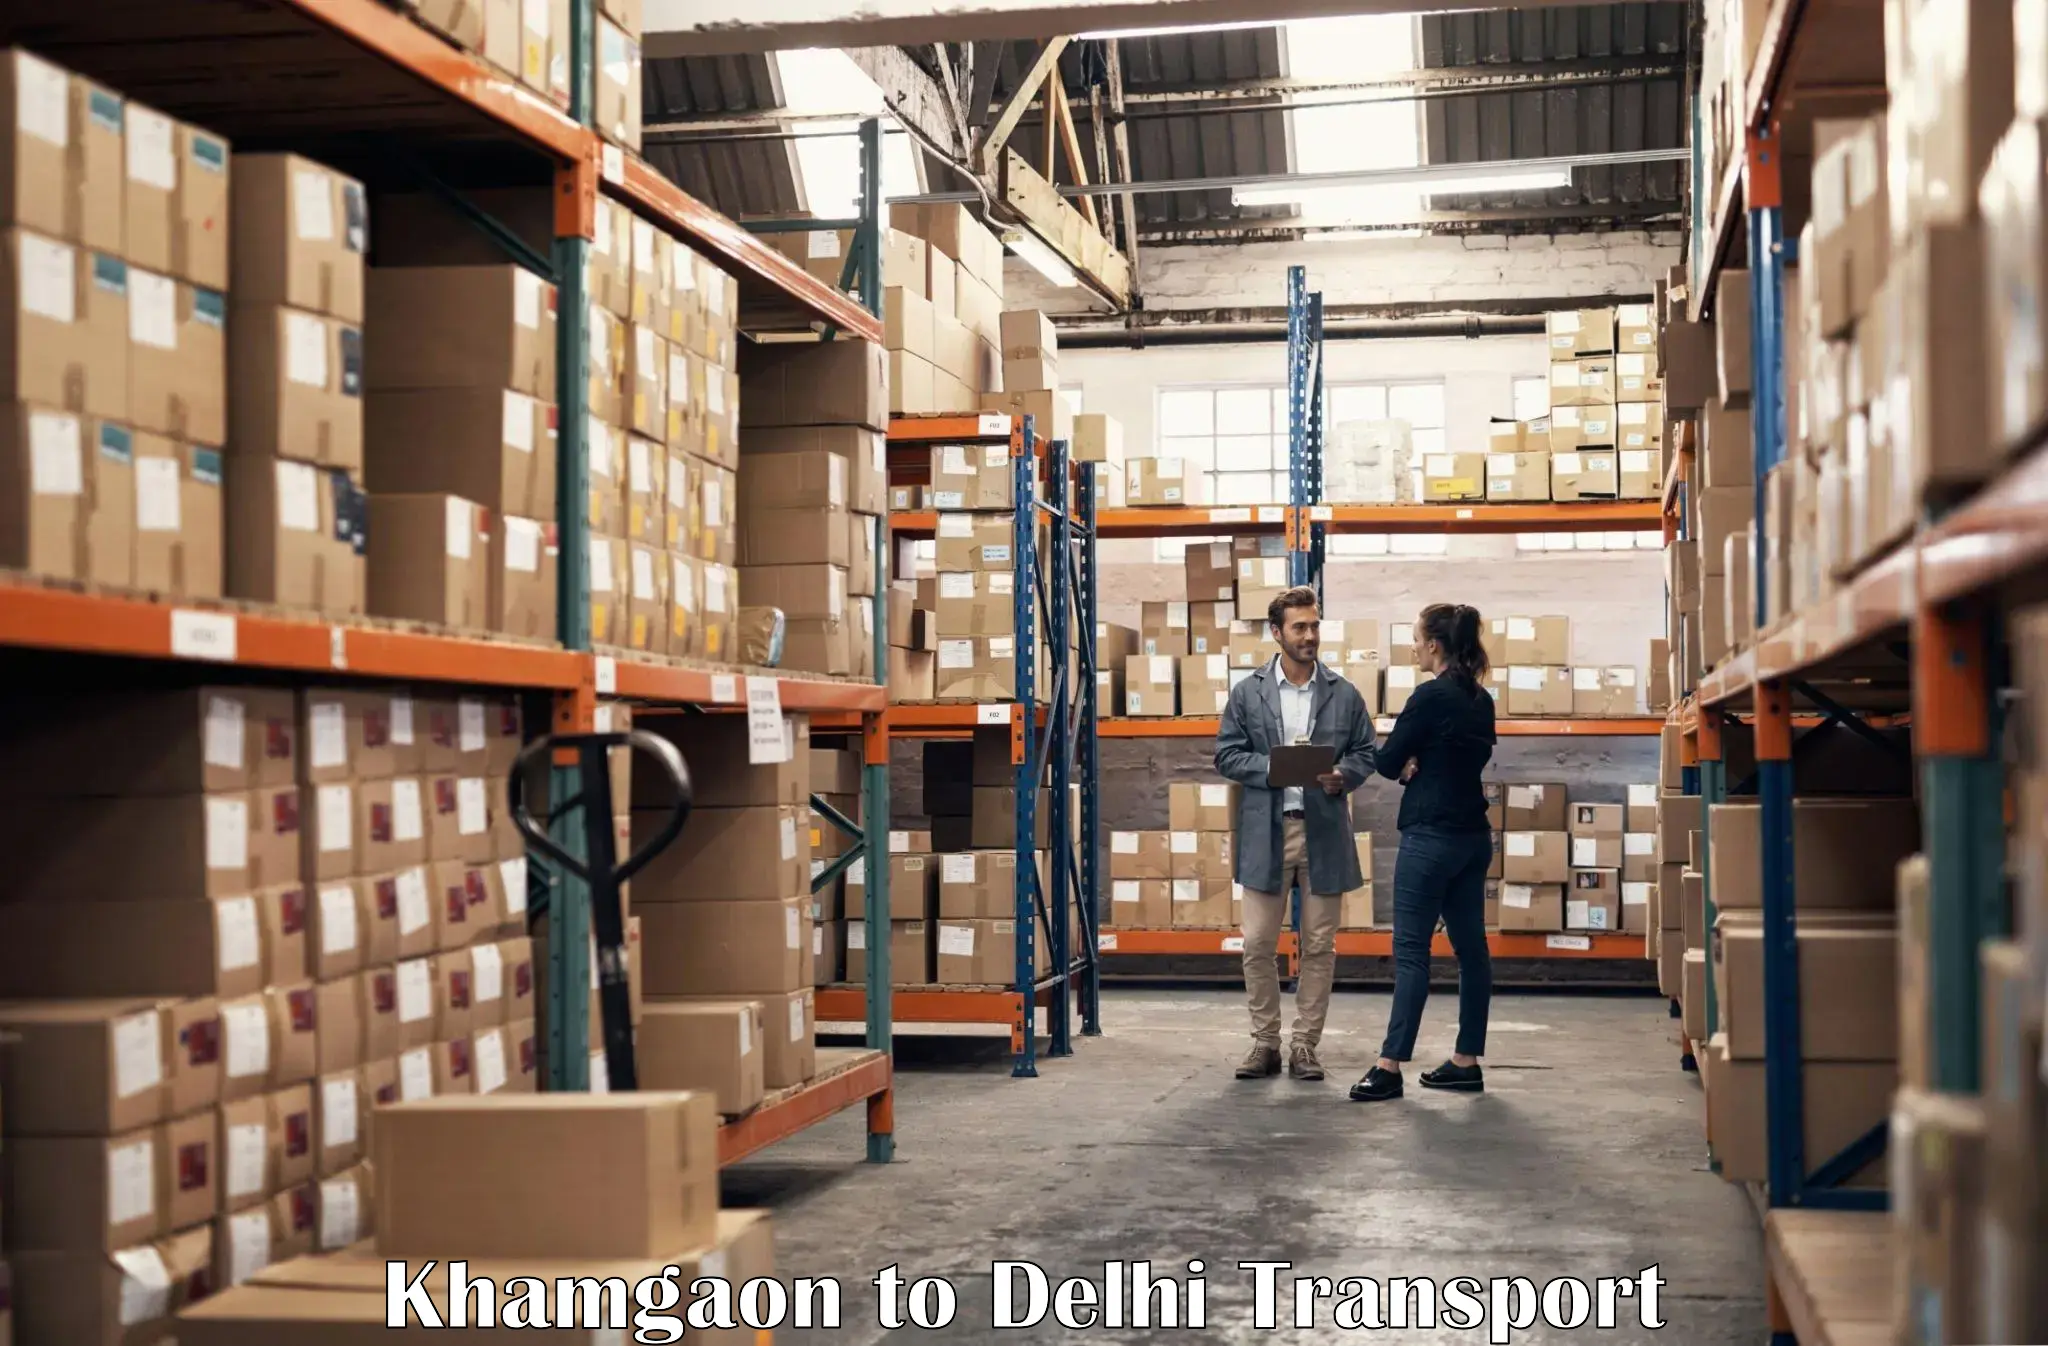 India truck logistics services Khamgaon to IIT Delhi